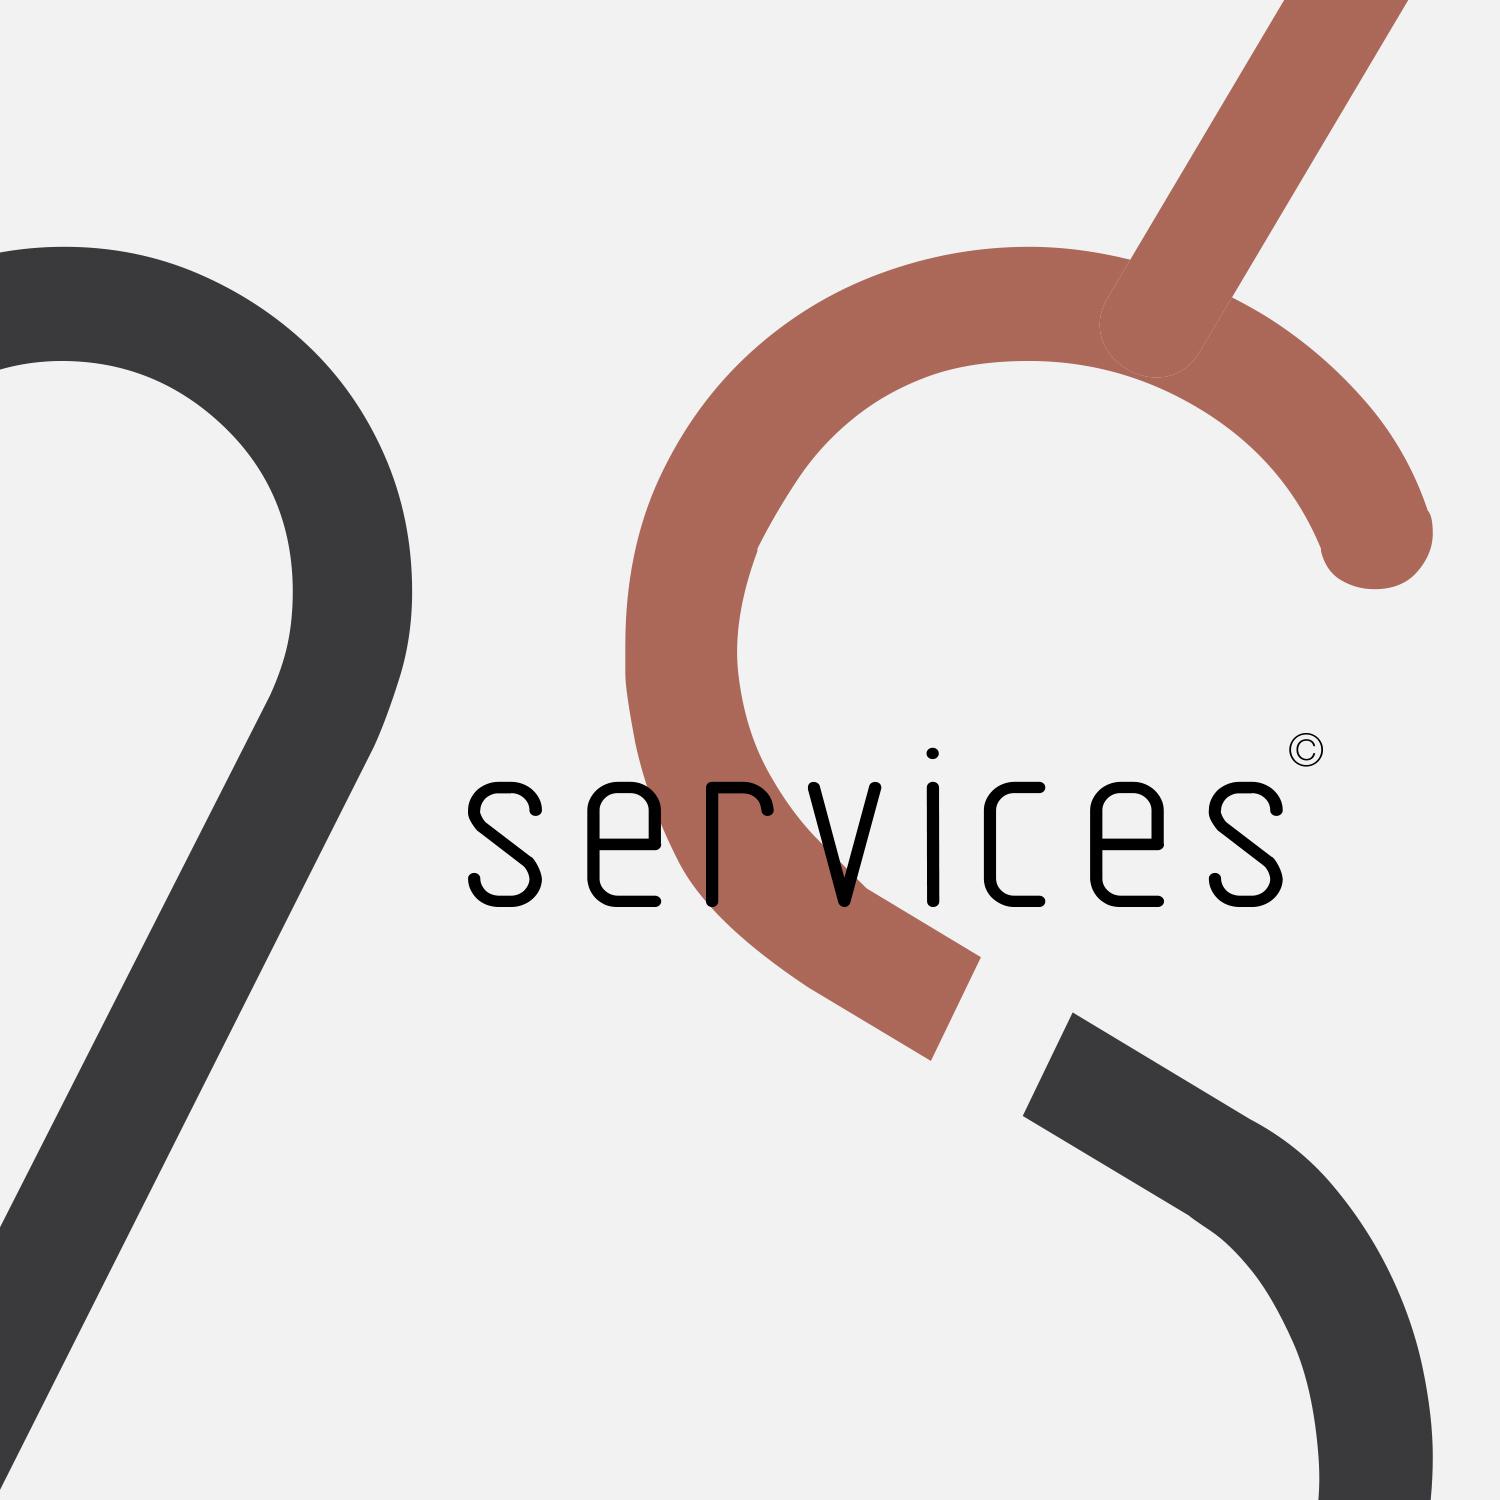 M2S Services / Paris © Blueberry's Studio 2015